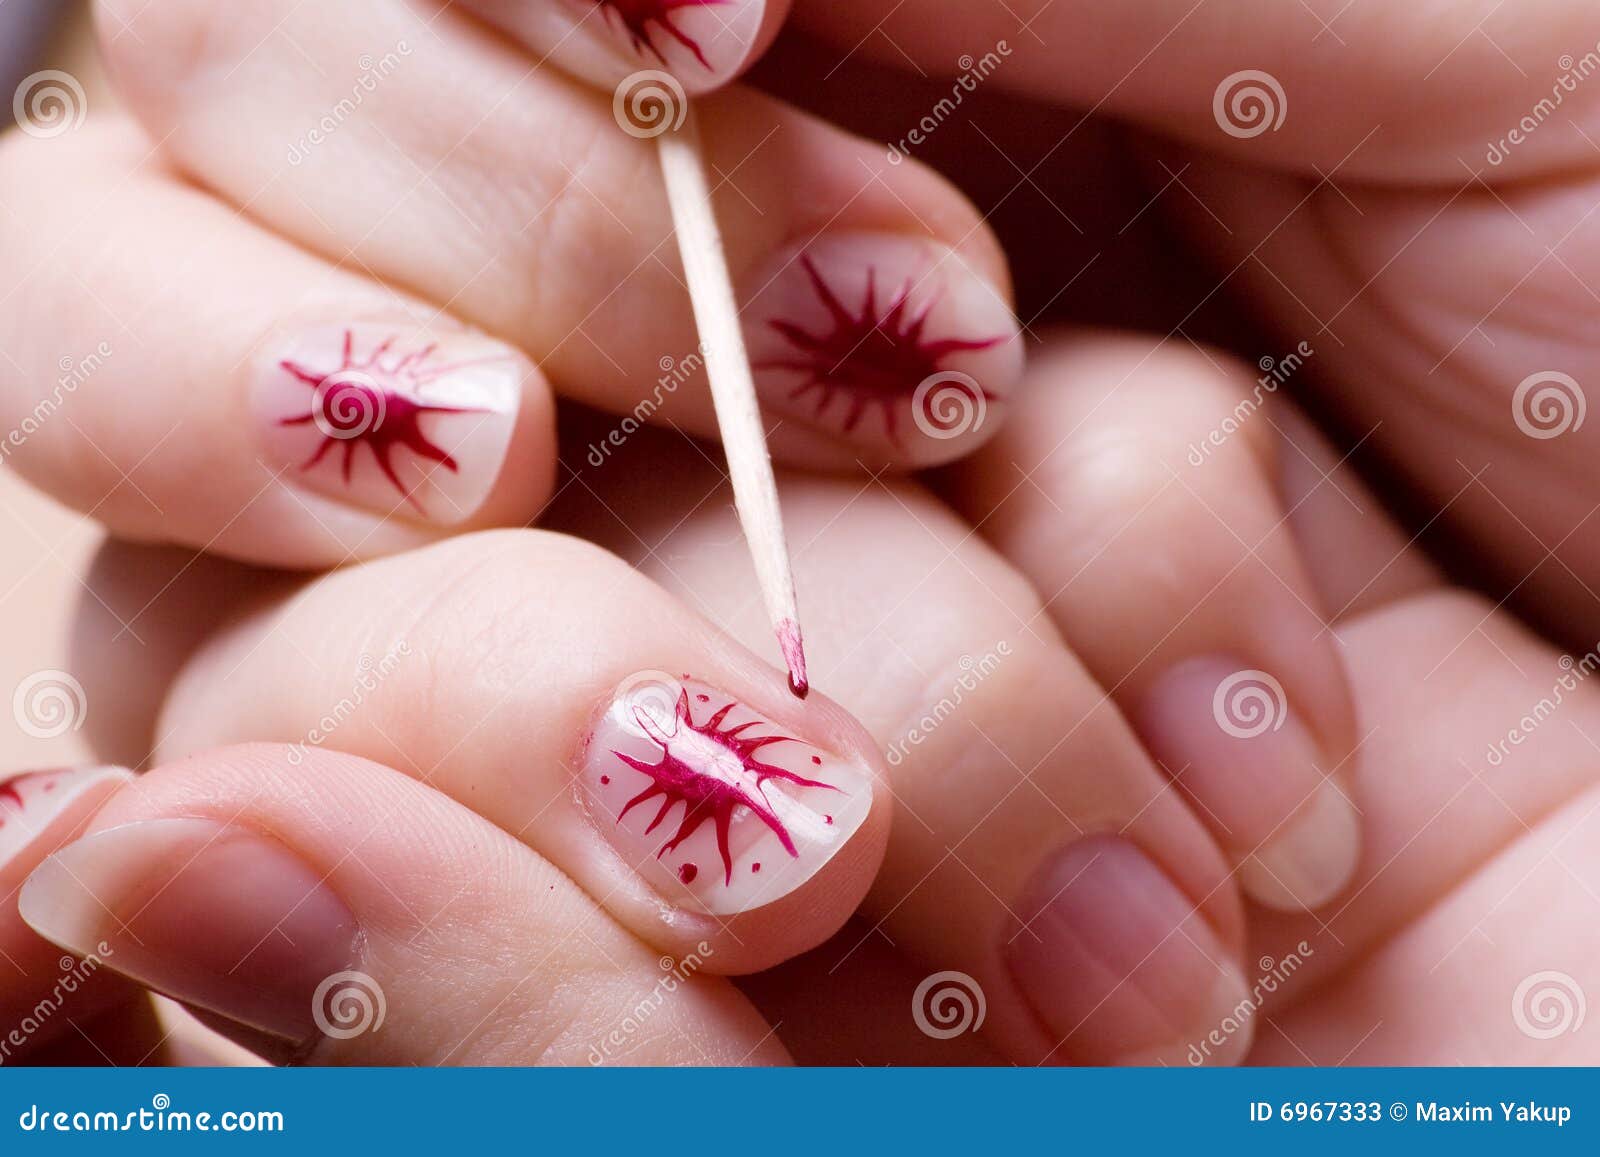 Простые рисунки на ногтях иголкой в домашних условиях